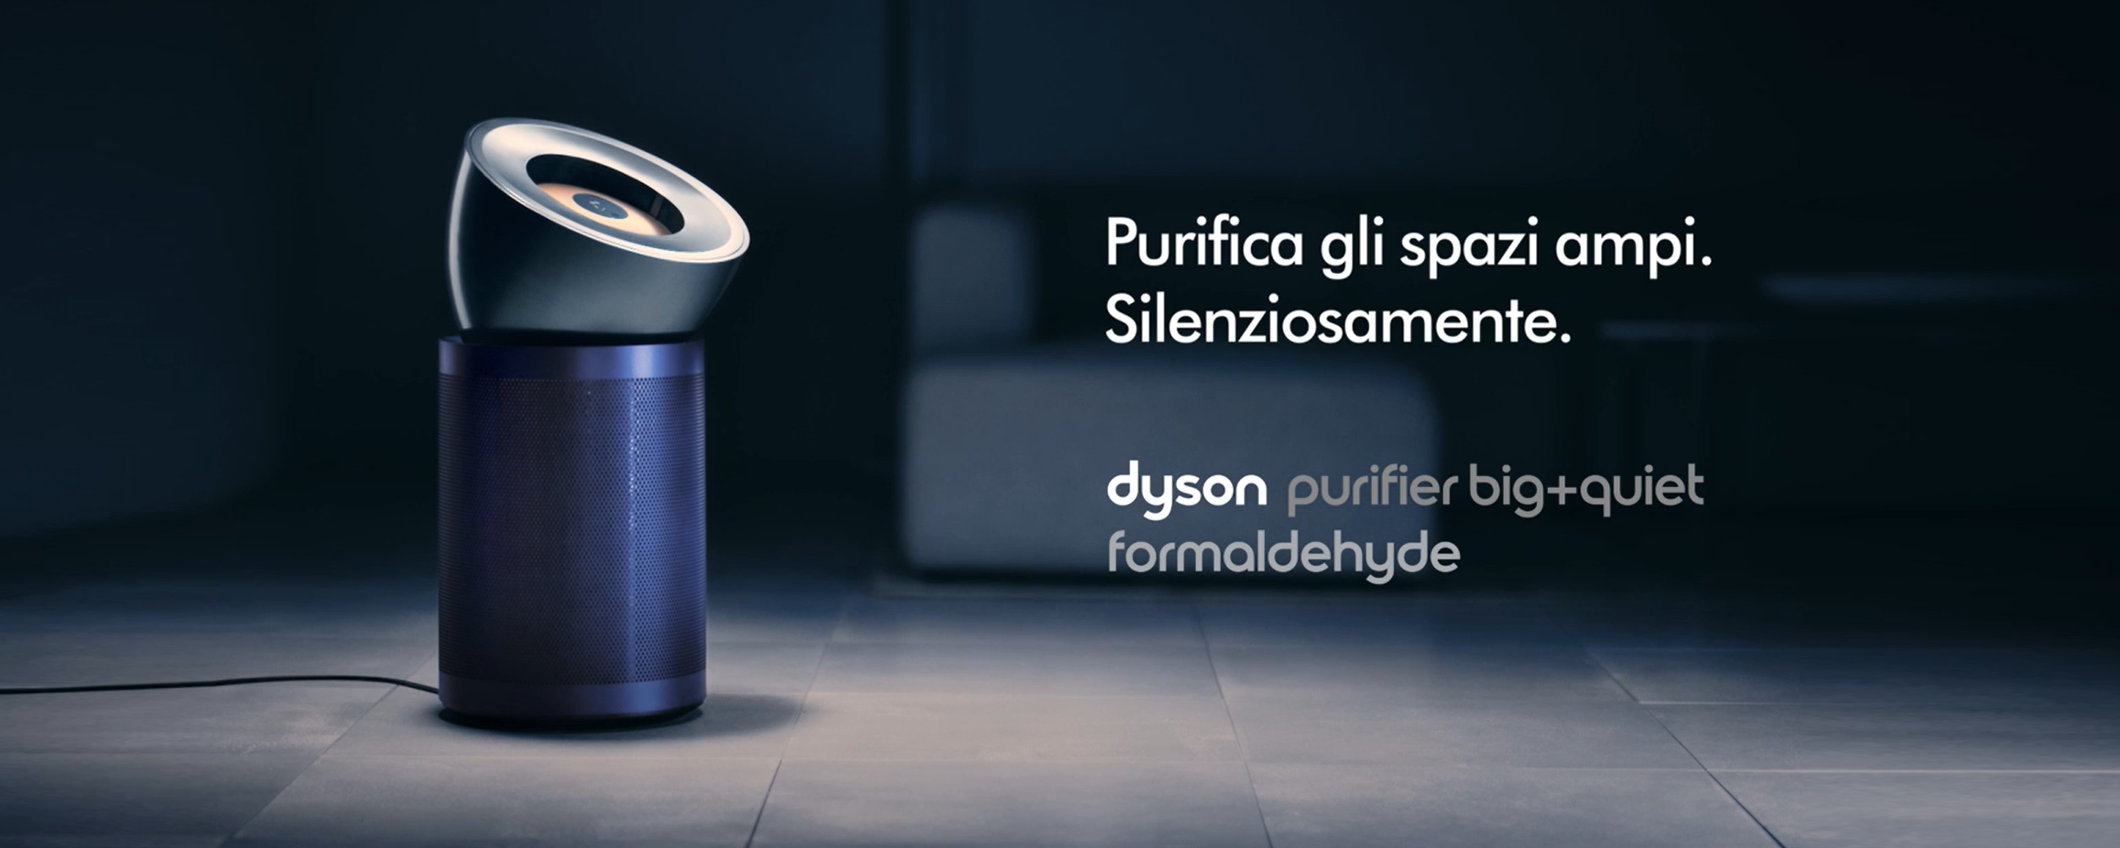 Nuovo purificatore Dyson: è potentissimo ma SUPER silenzioso